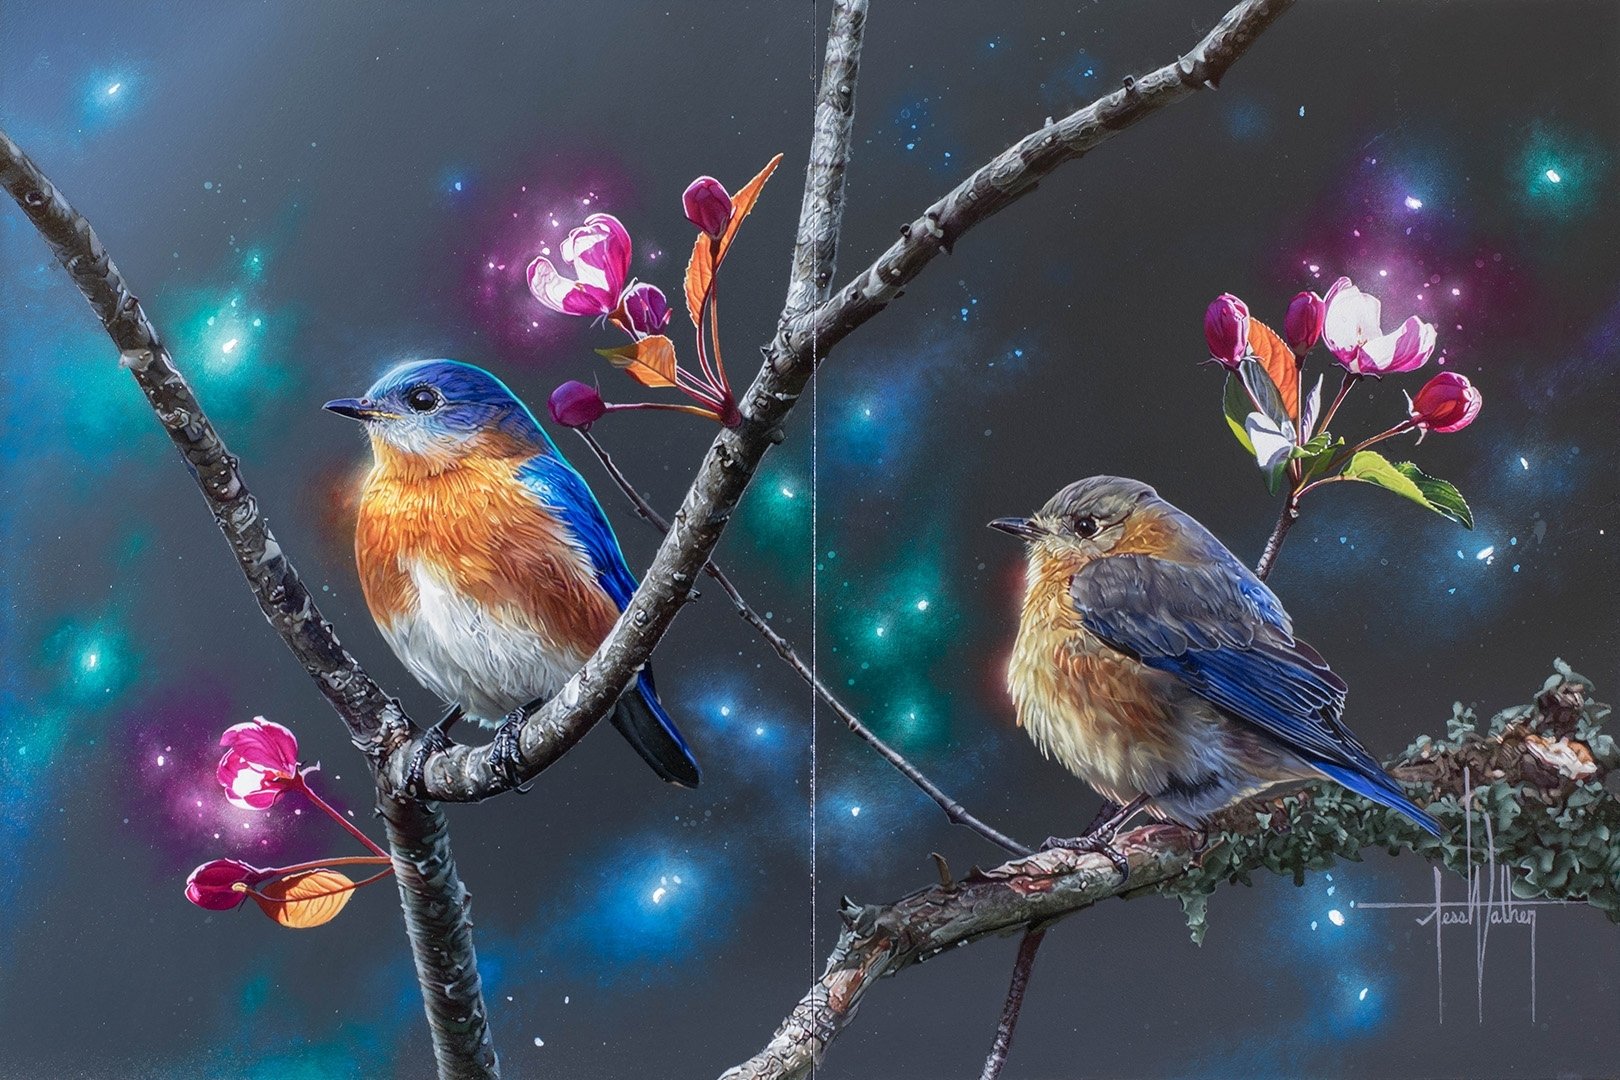 eastern wallpaper,bird,nature,branch,eastern bluebird,songbird